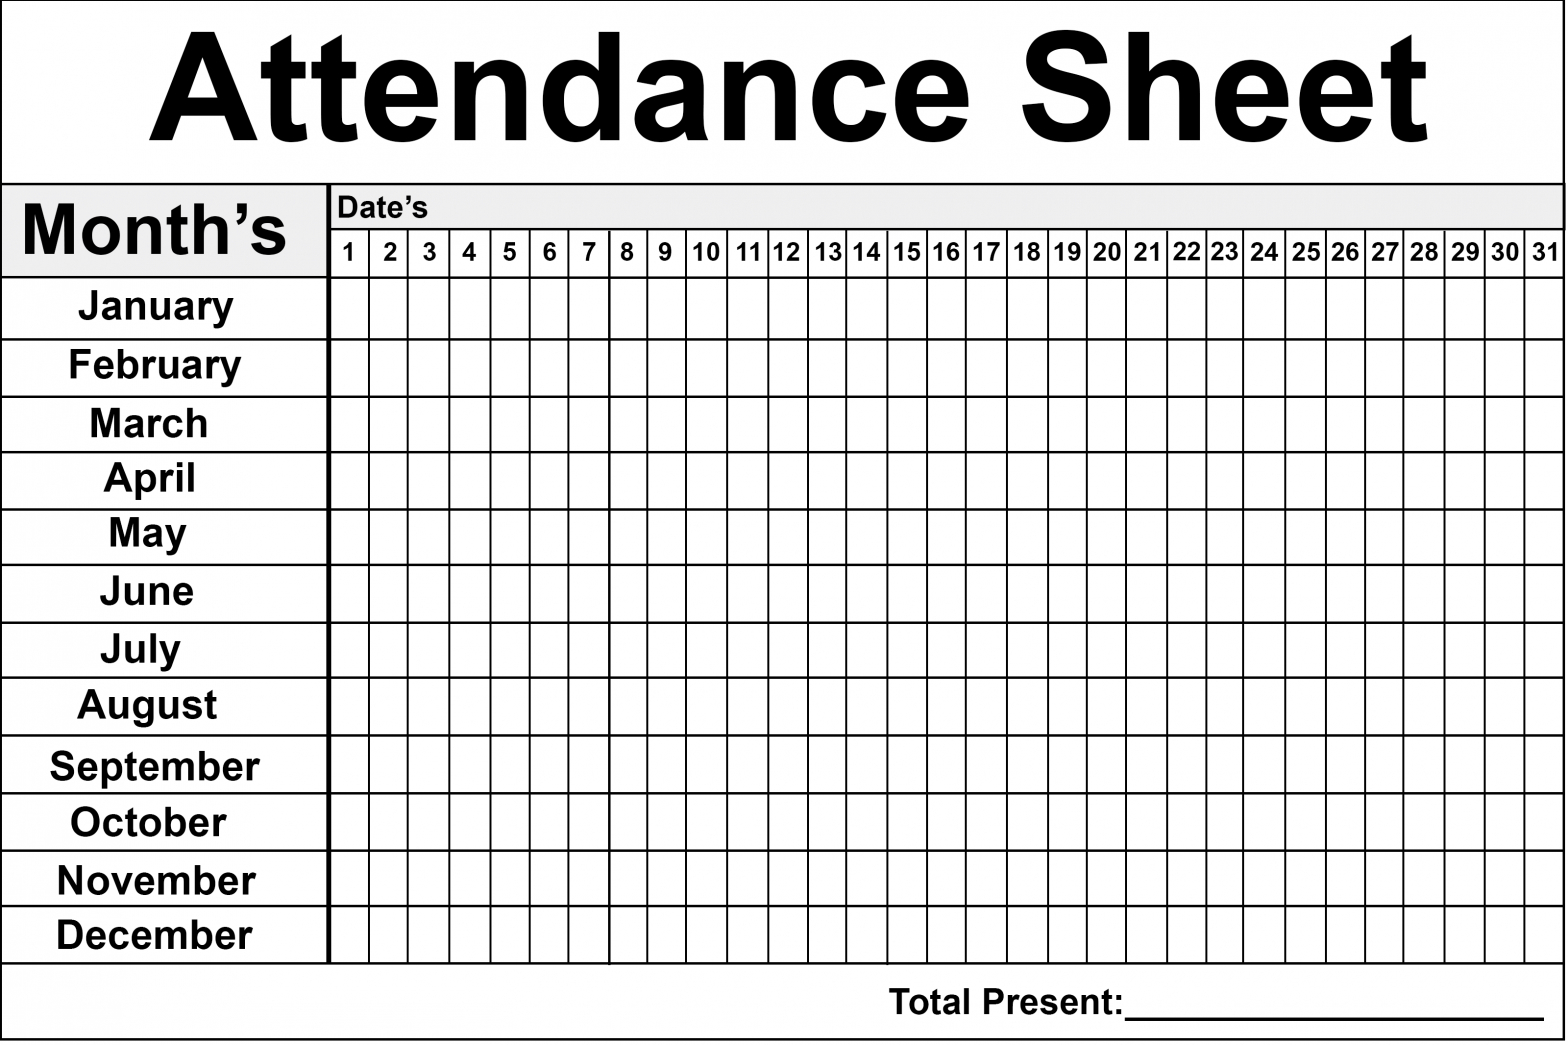 Employee Attendance Sheet | Attendance Sheet, Printable